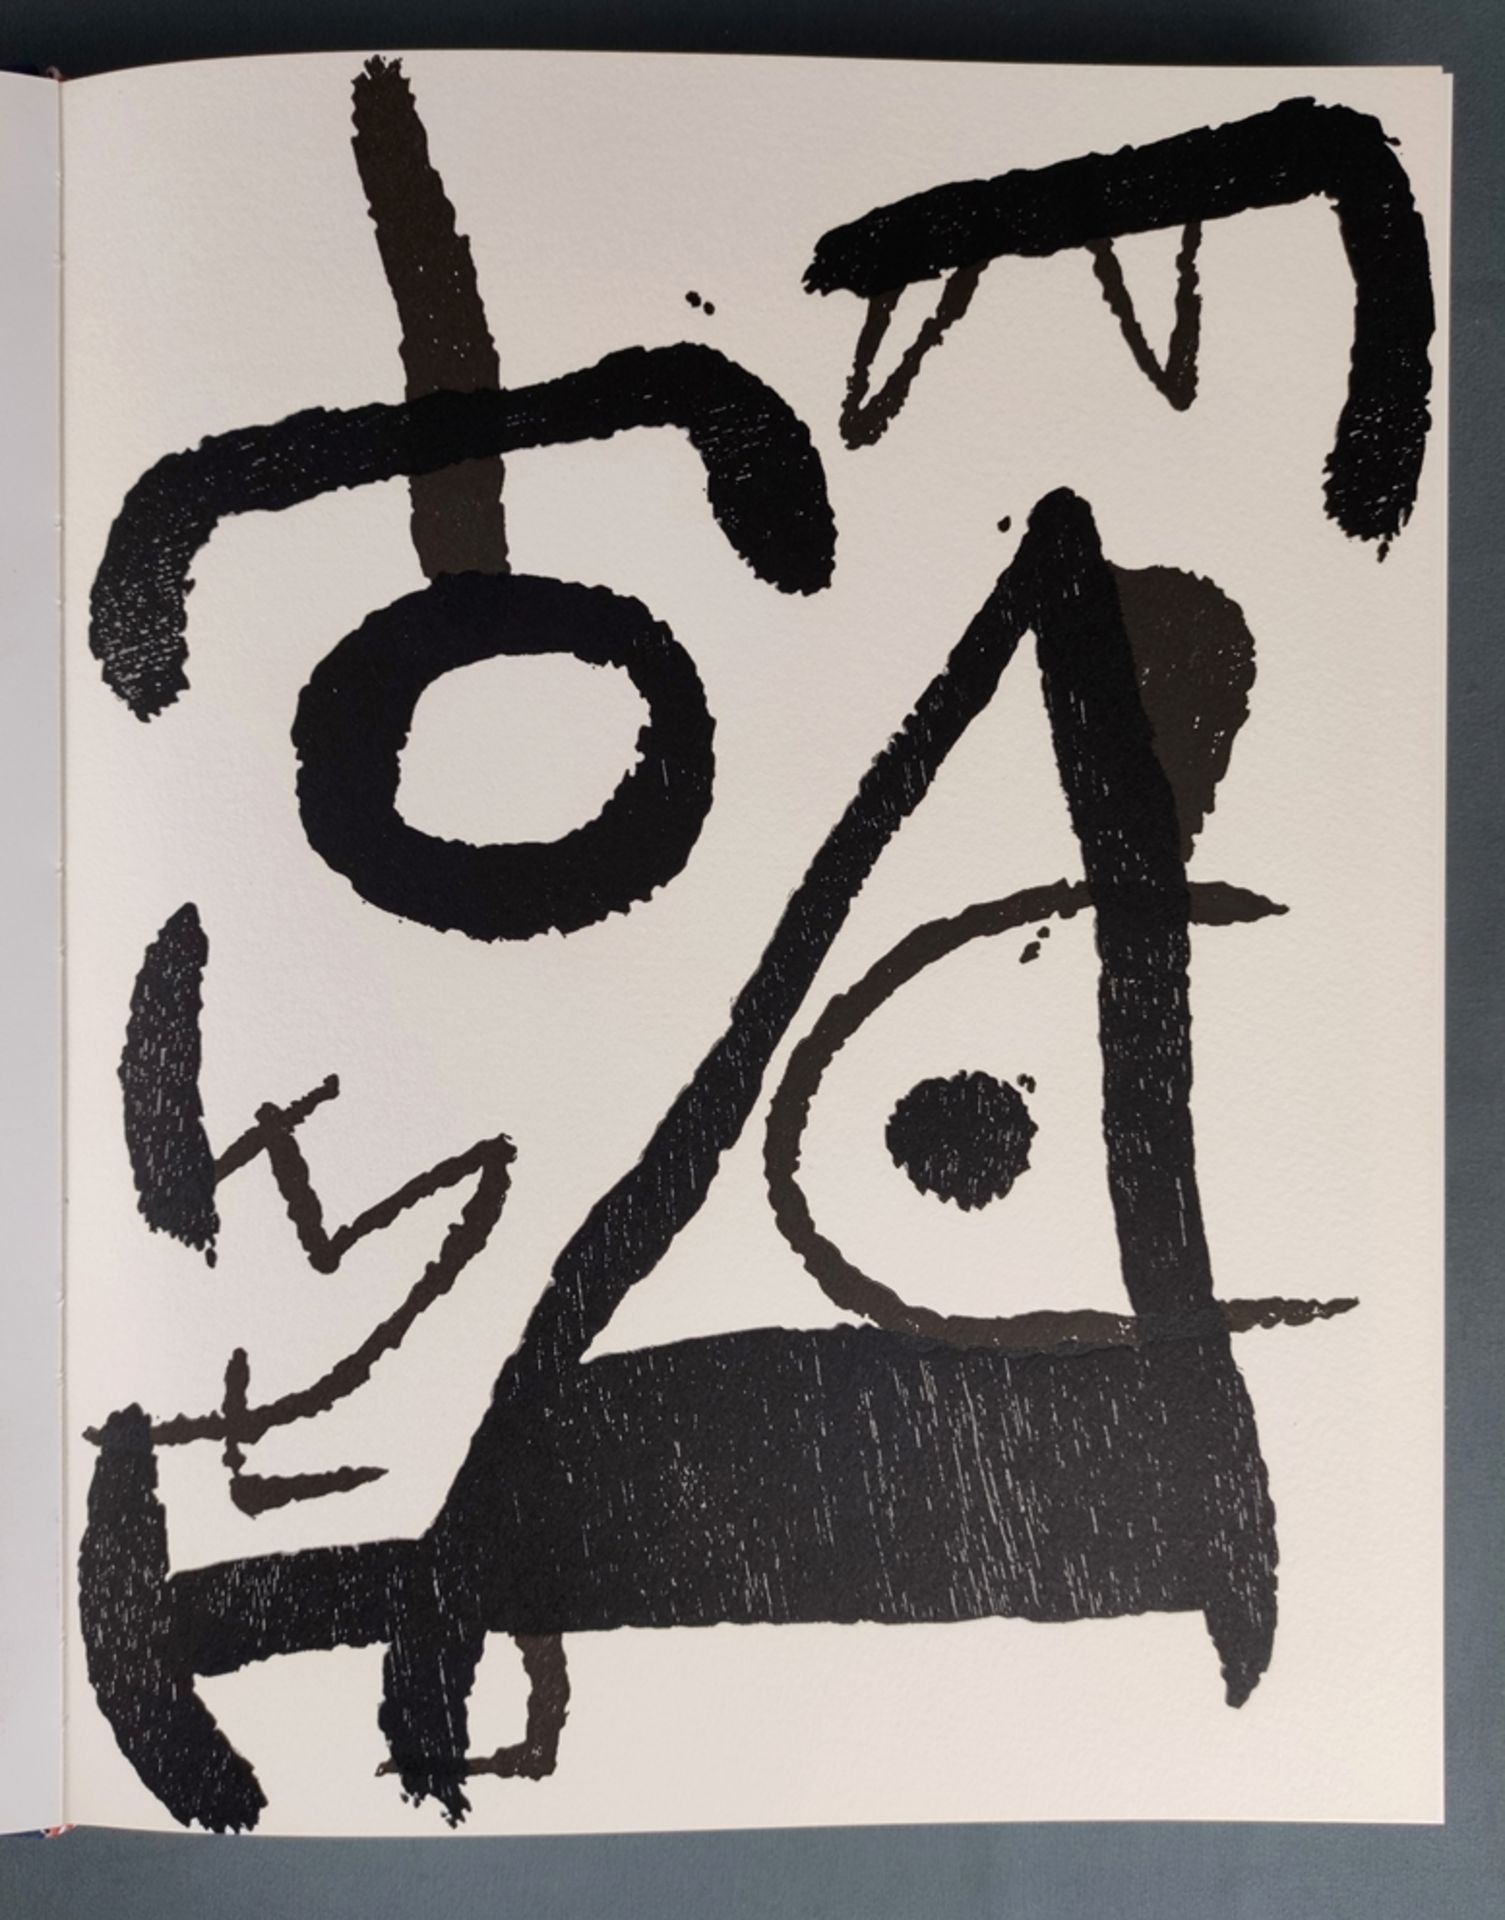 Kunstband Miró, 3 Bände Radierungen, "Joan Miró - Graveur" (Band I-III), Dupin, Jacques, Original-R - Bild 11 aus 11